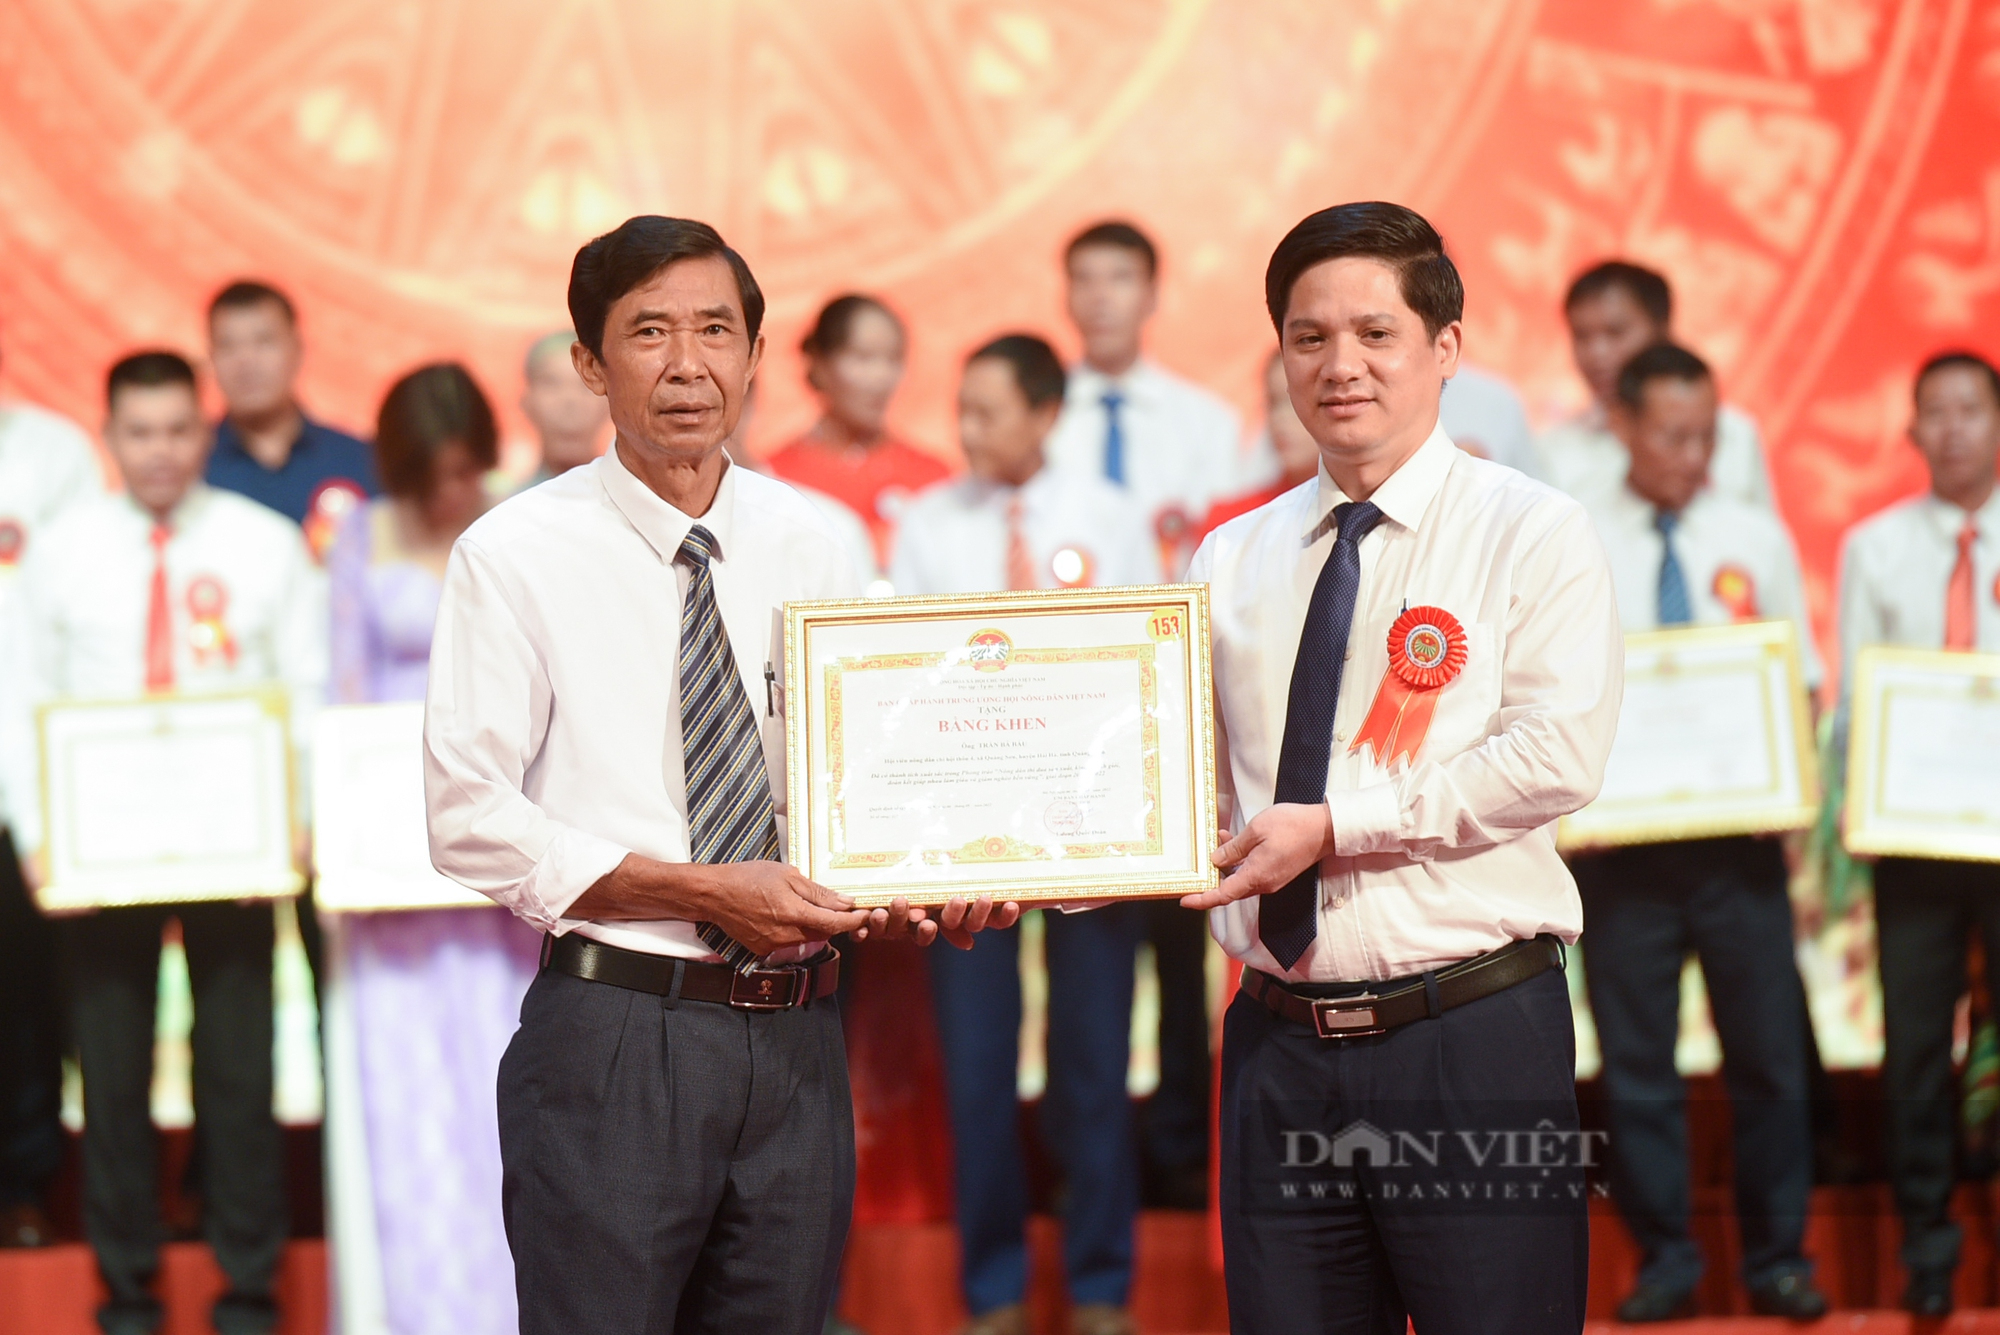 Gần 300 nông dân được tặng bằng khen của Trung ương Hội nông dân Việt Nam - Ảnh 7.